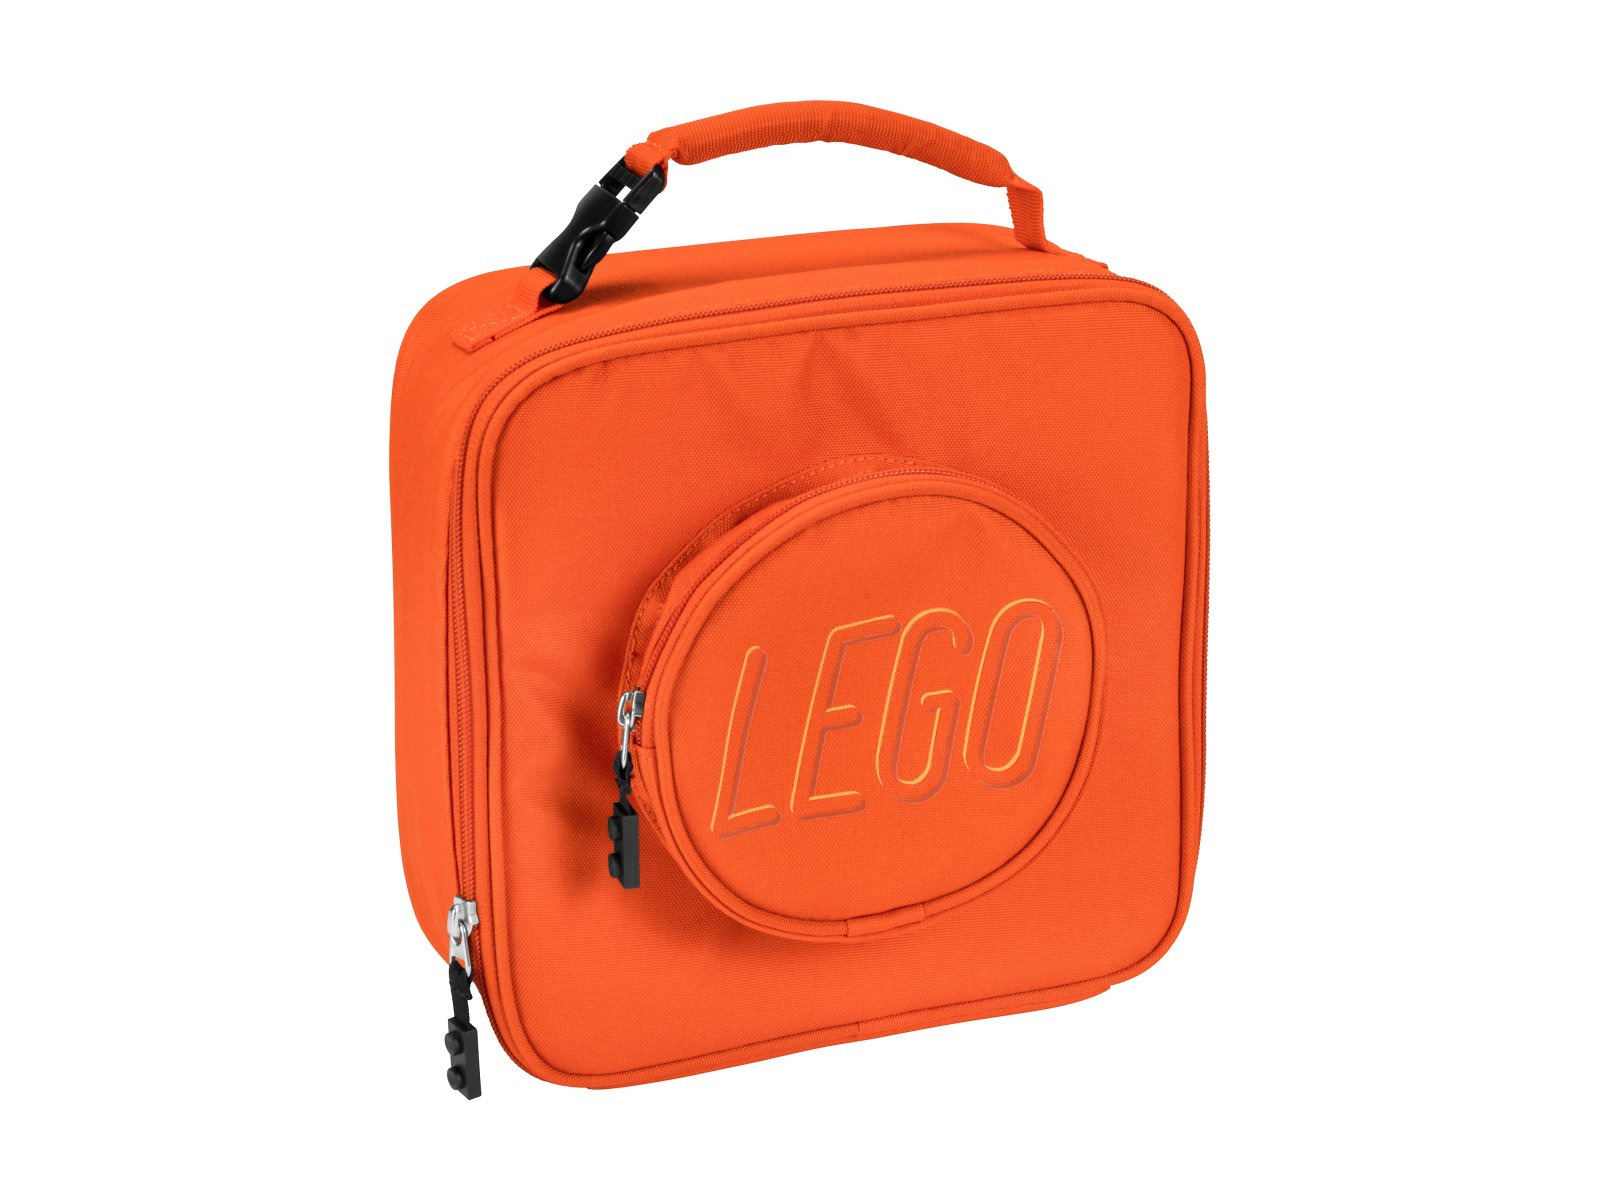 LEGO 5005516 Pomarańczowa torebka śniadaniowa w stylu klocka LEGO®